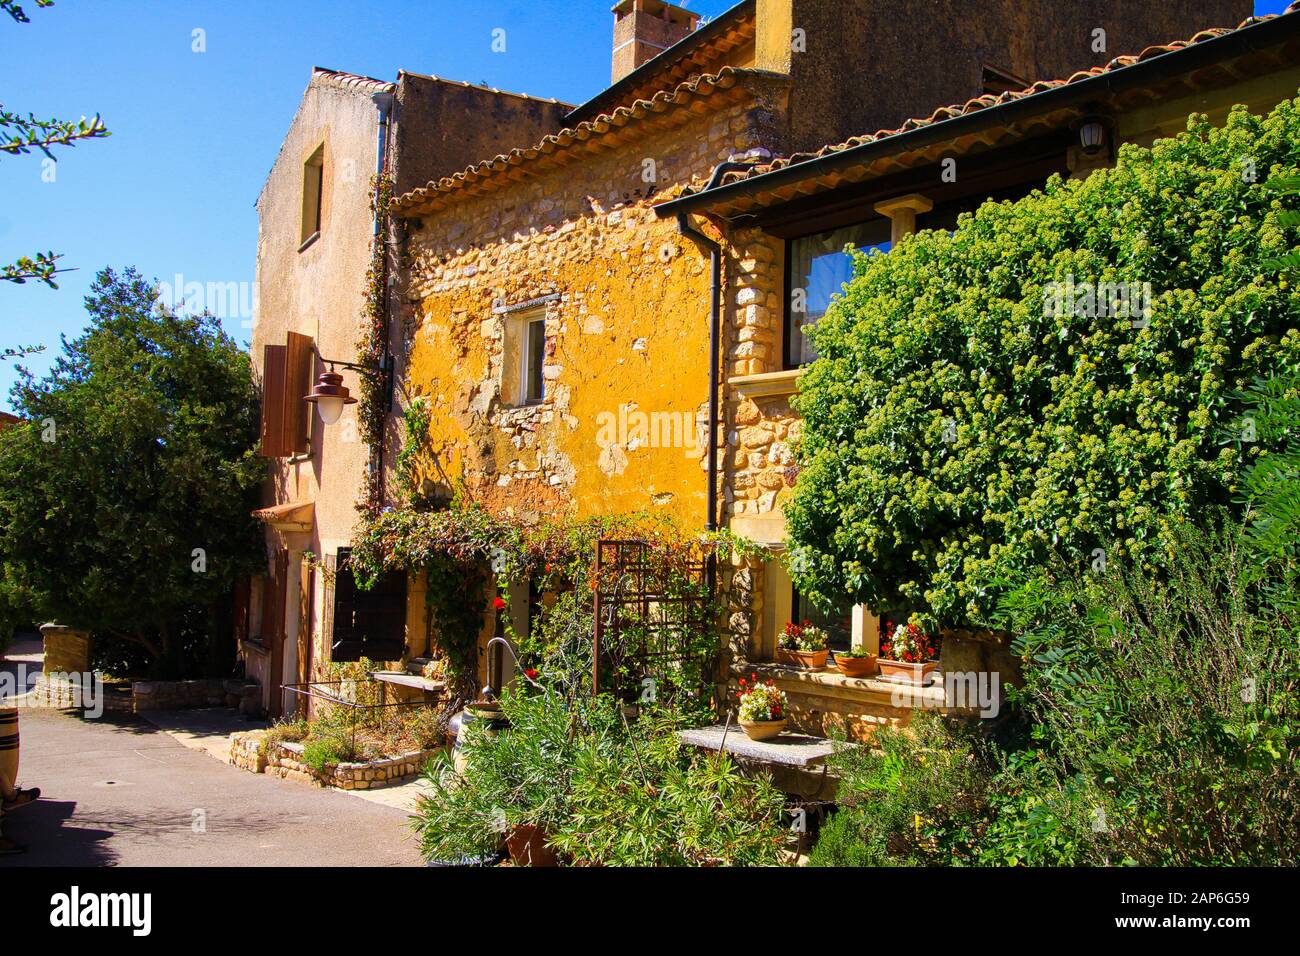 Roussillon En Provence, France - 2 Octobre. 2019: Vue sur la maison rurale en pierre jaune avec arbres, pots de fleurs et arbres le jour ensoleillé Banque D'Images